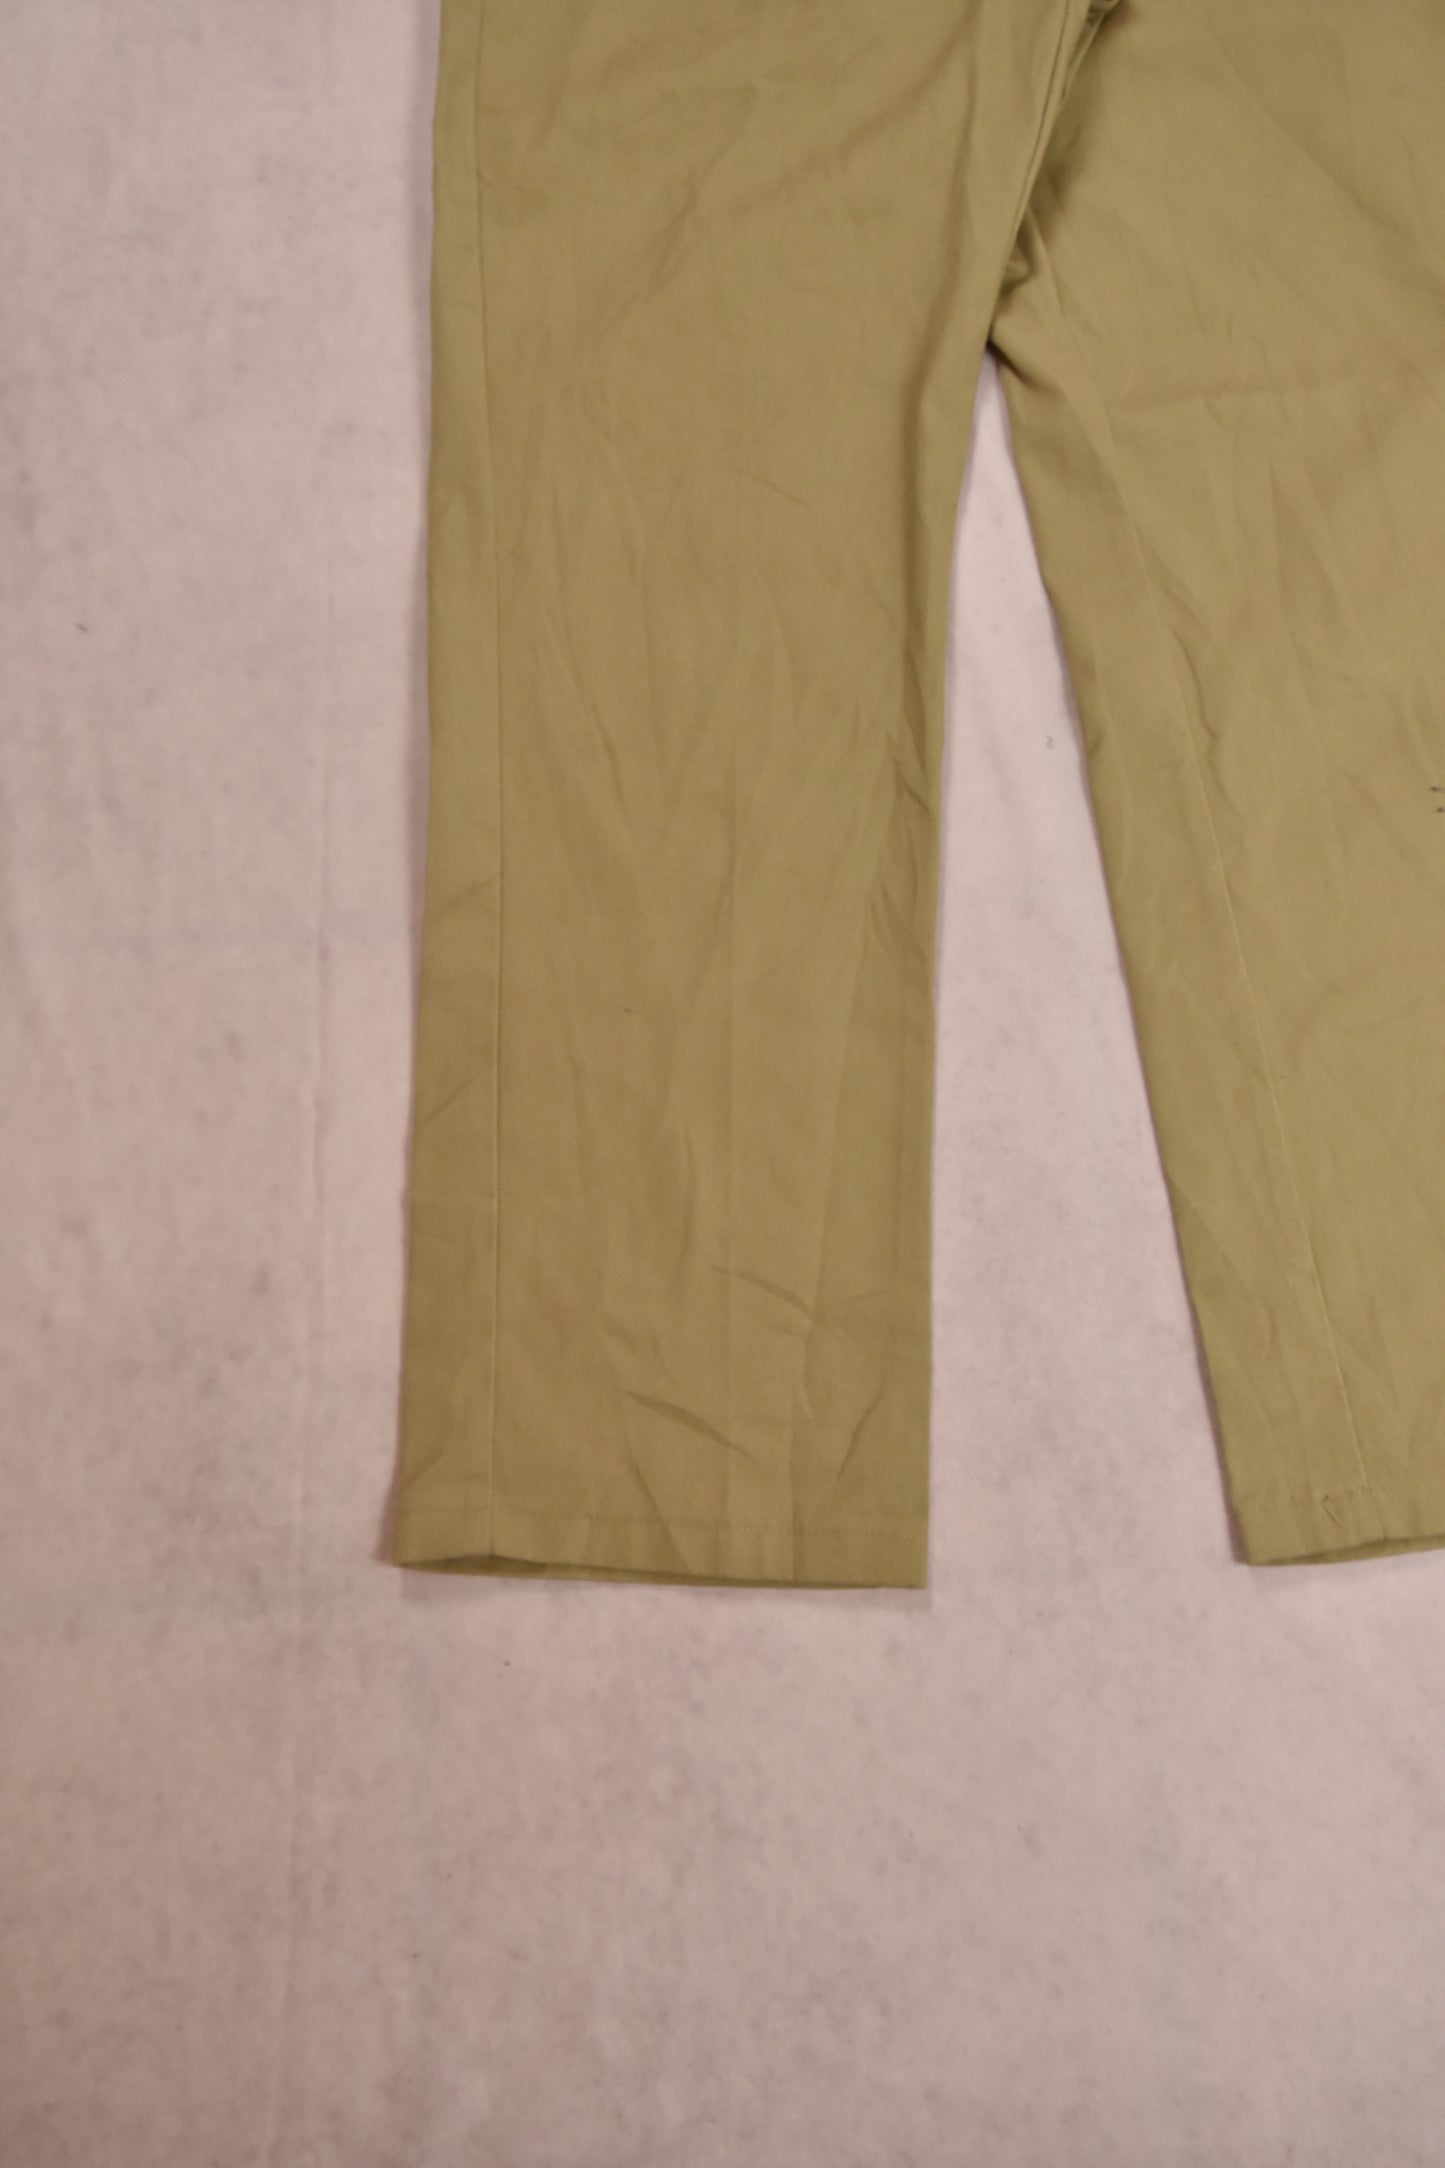 Pantaloni Dickies 874 Vintage / 36x34